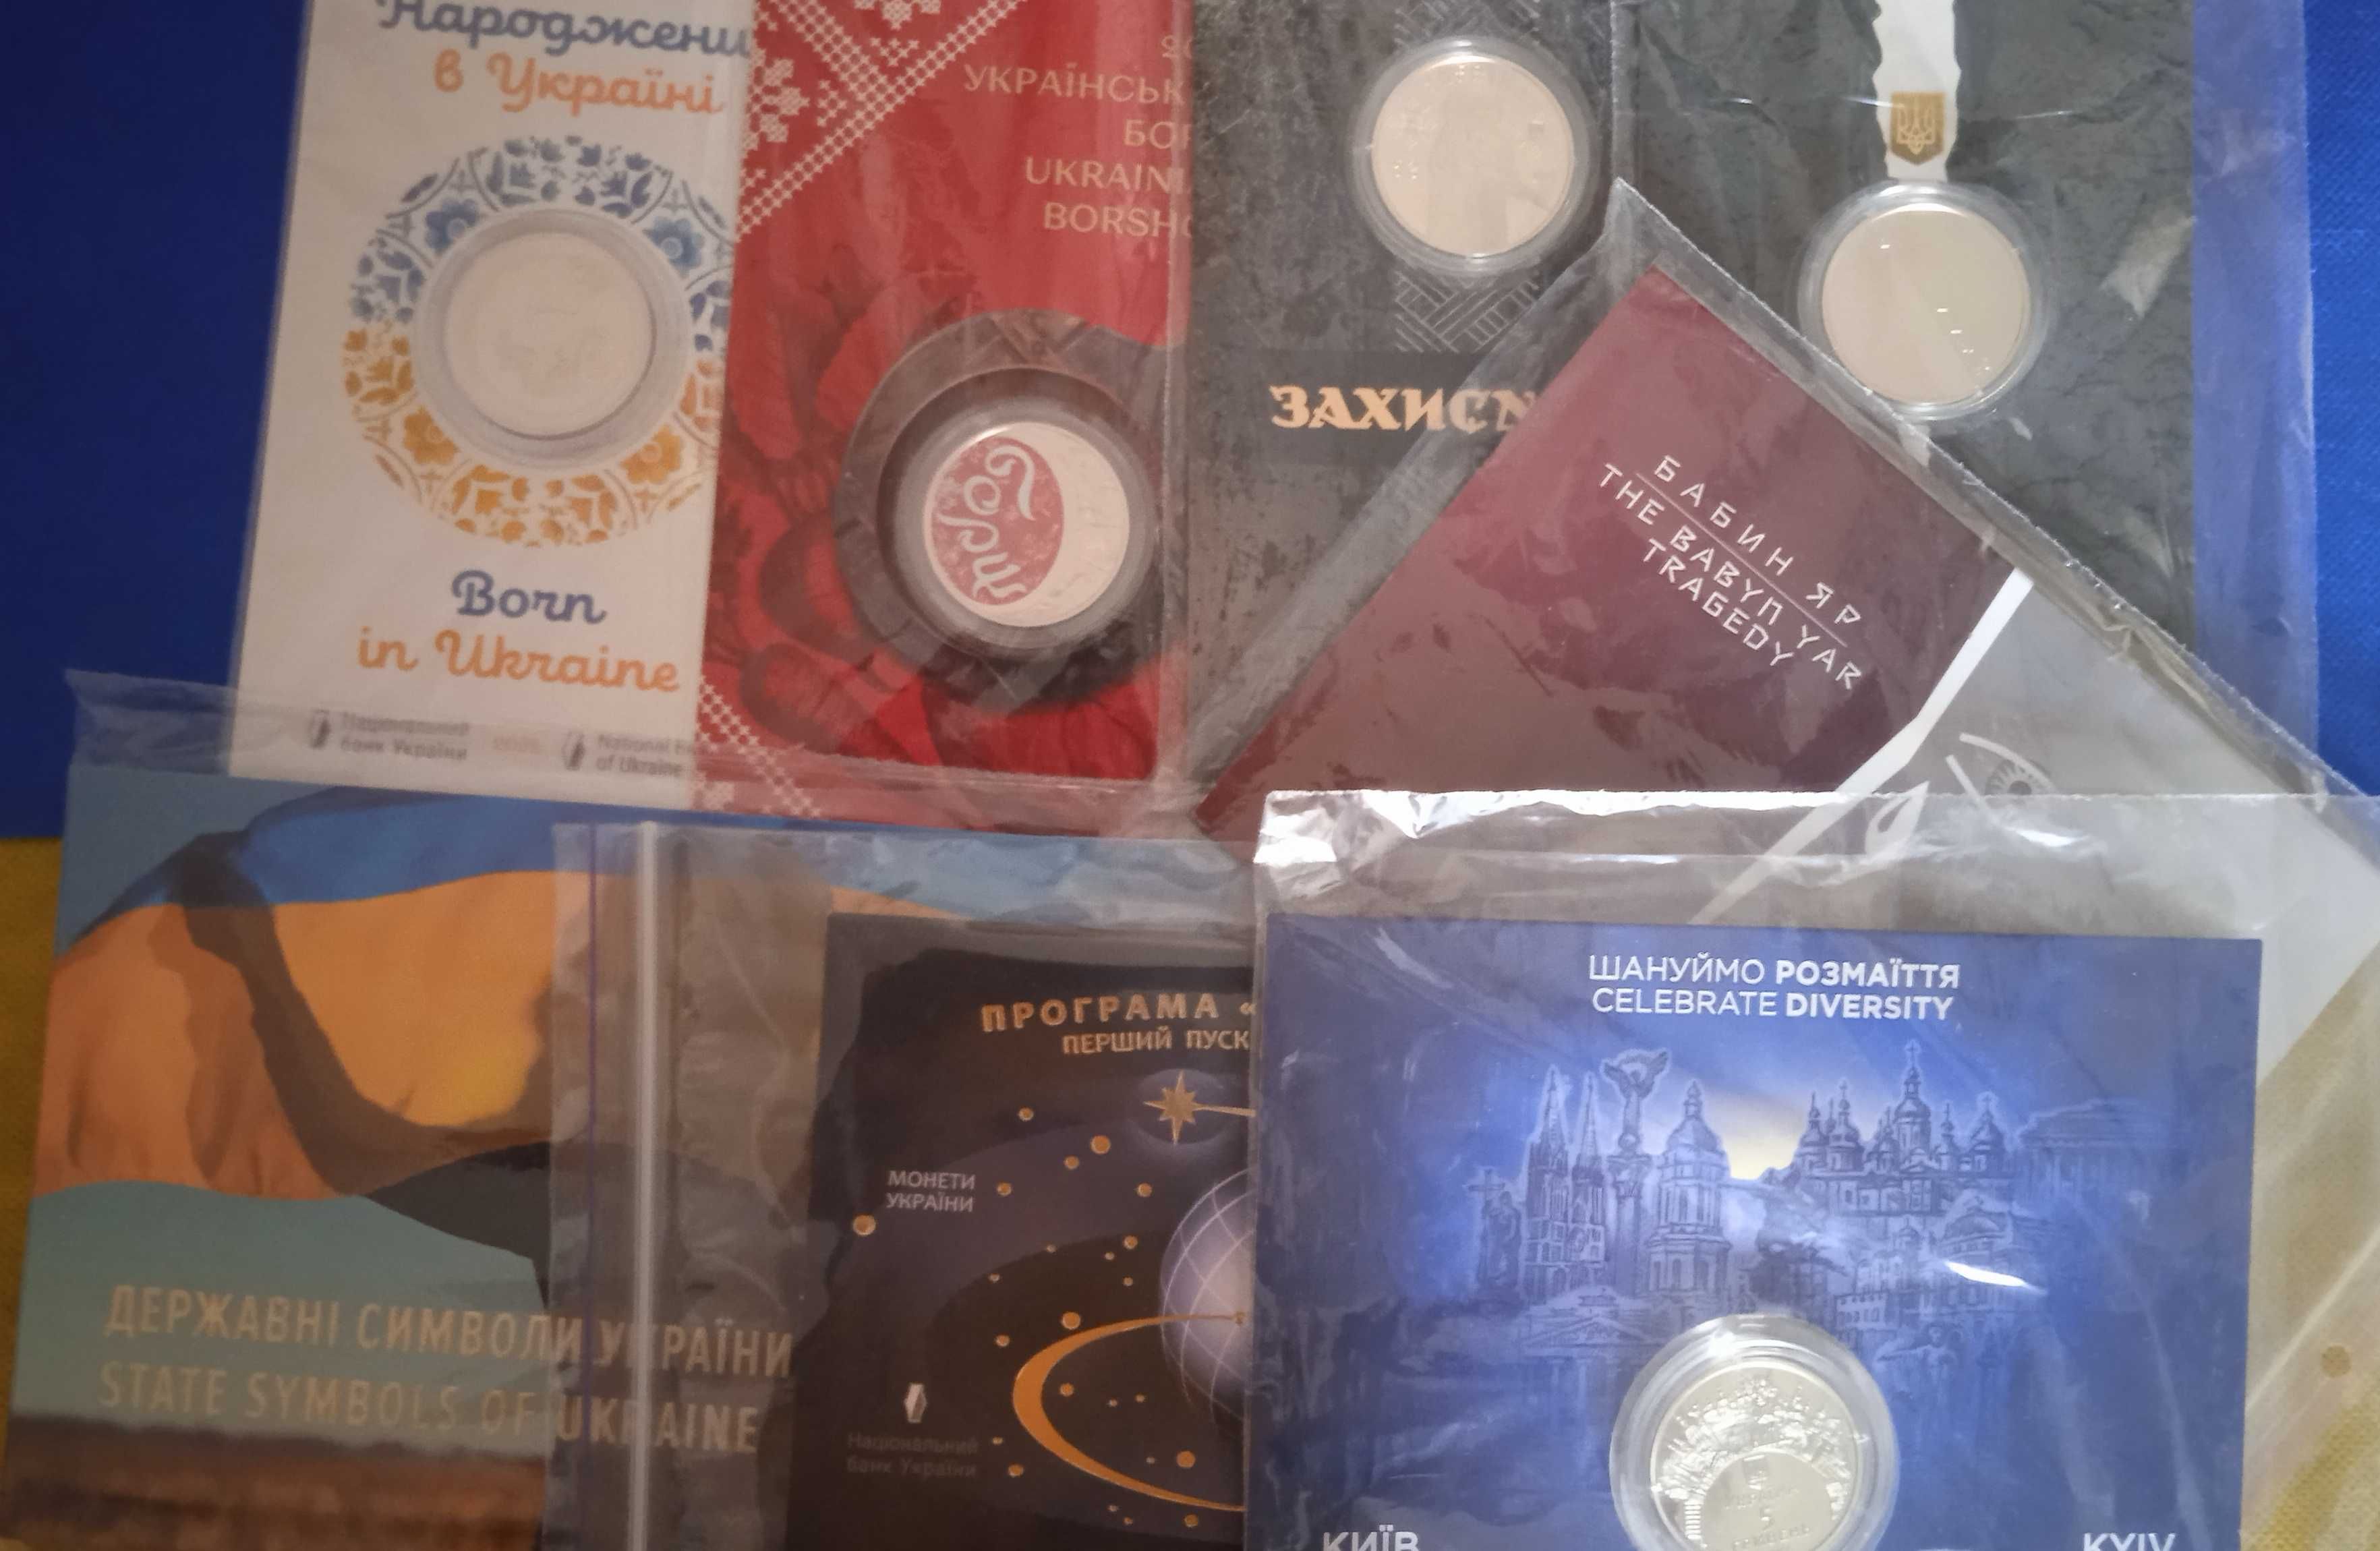 Колекційні пам'ятні монети України 5 грн у сувенірній упаковці